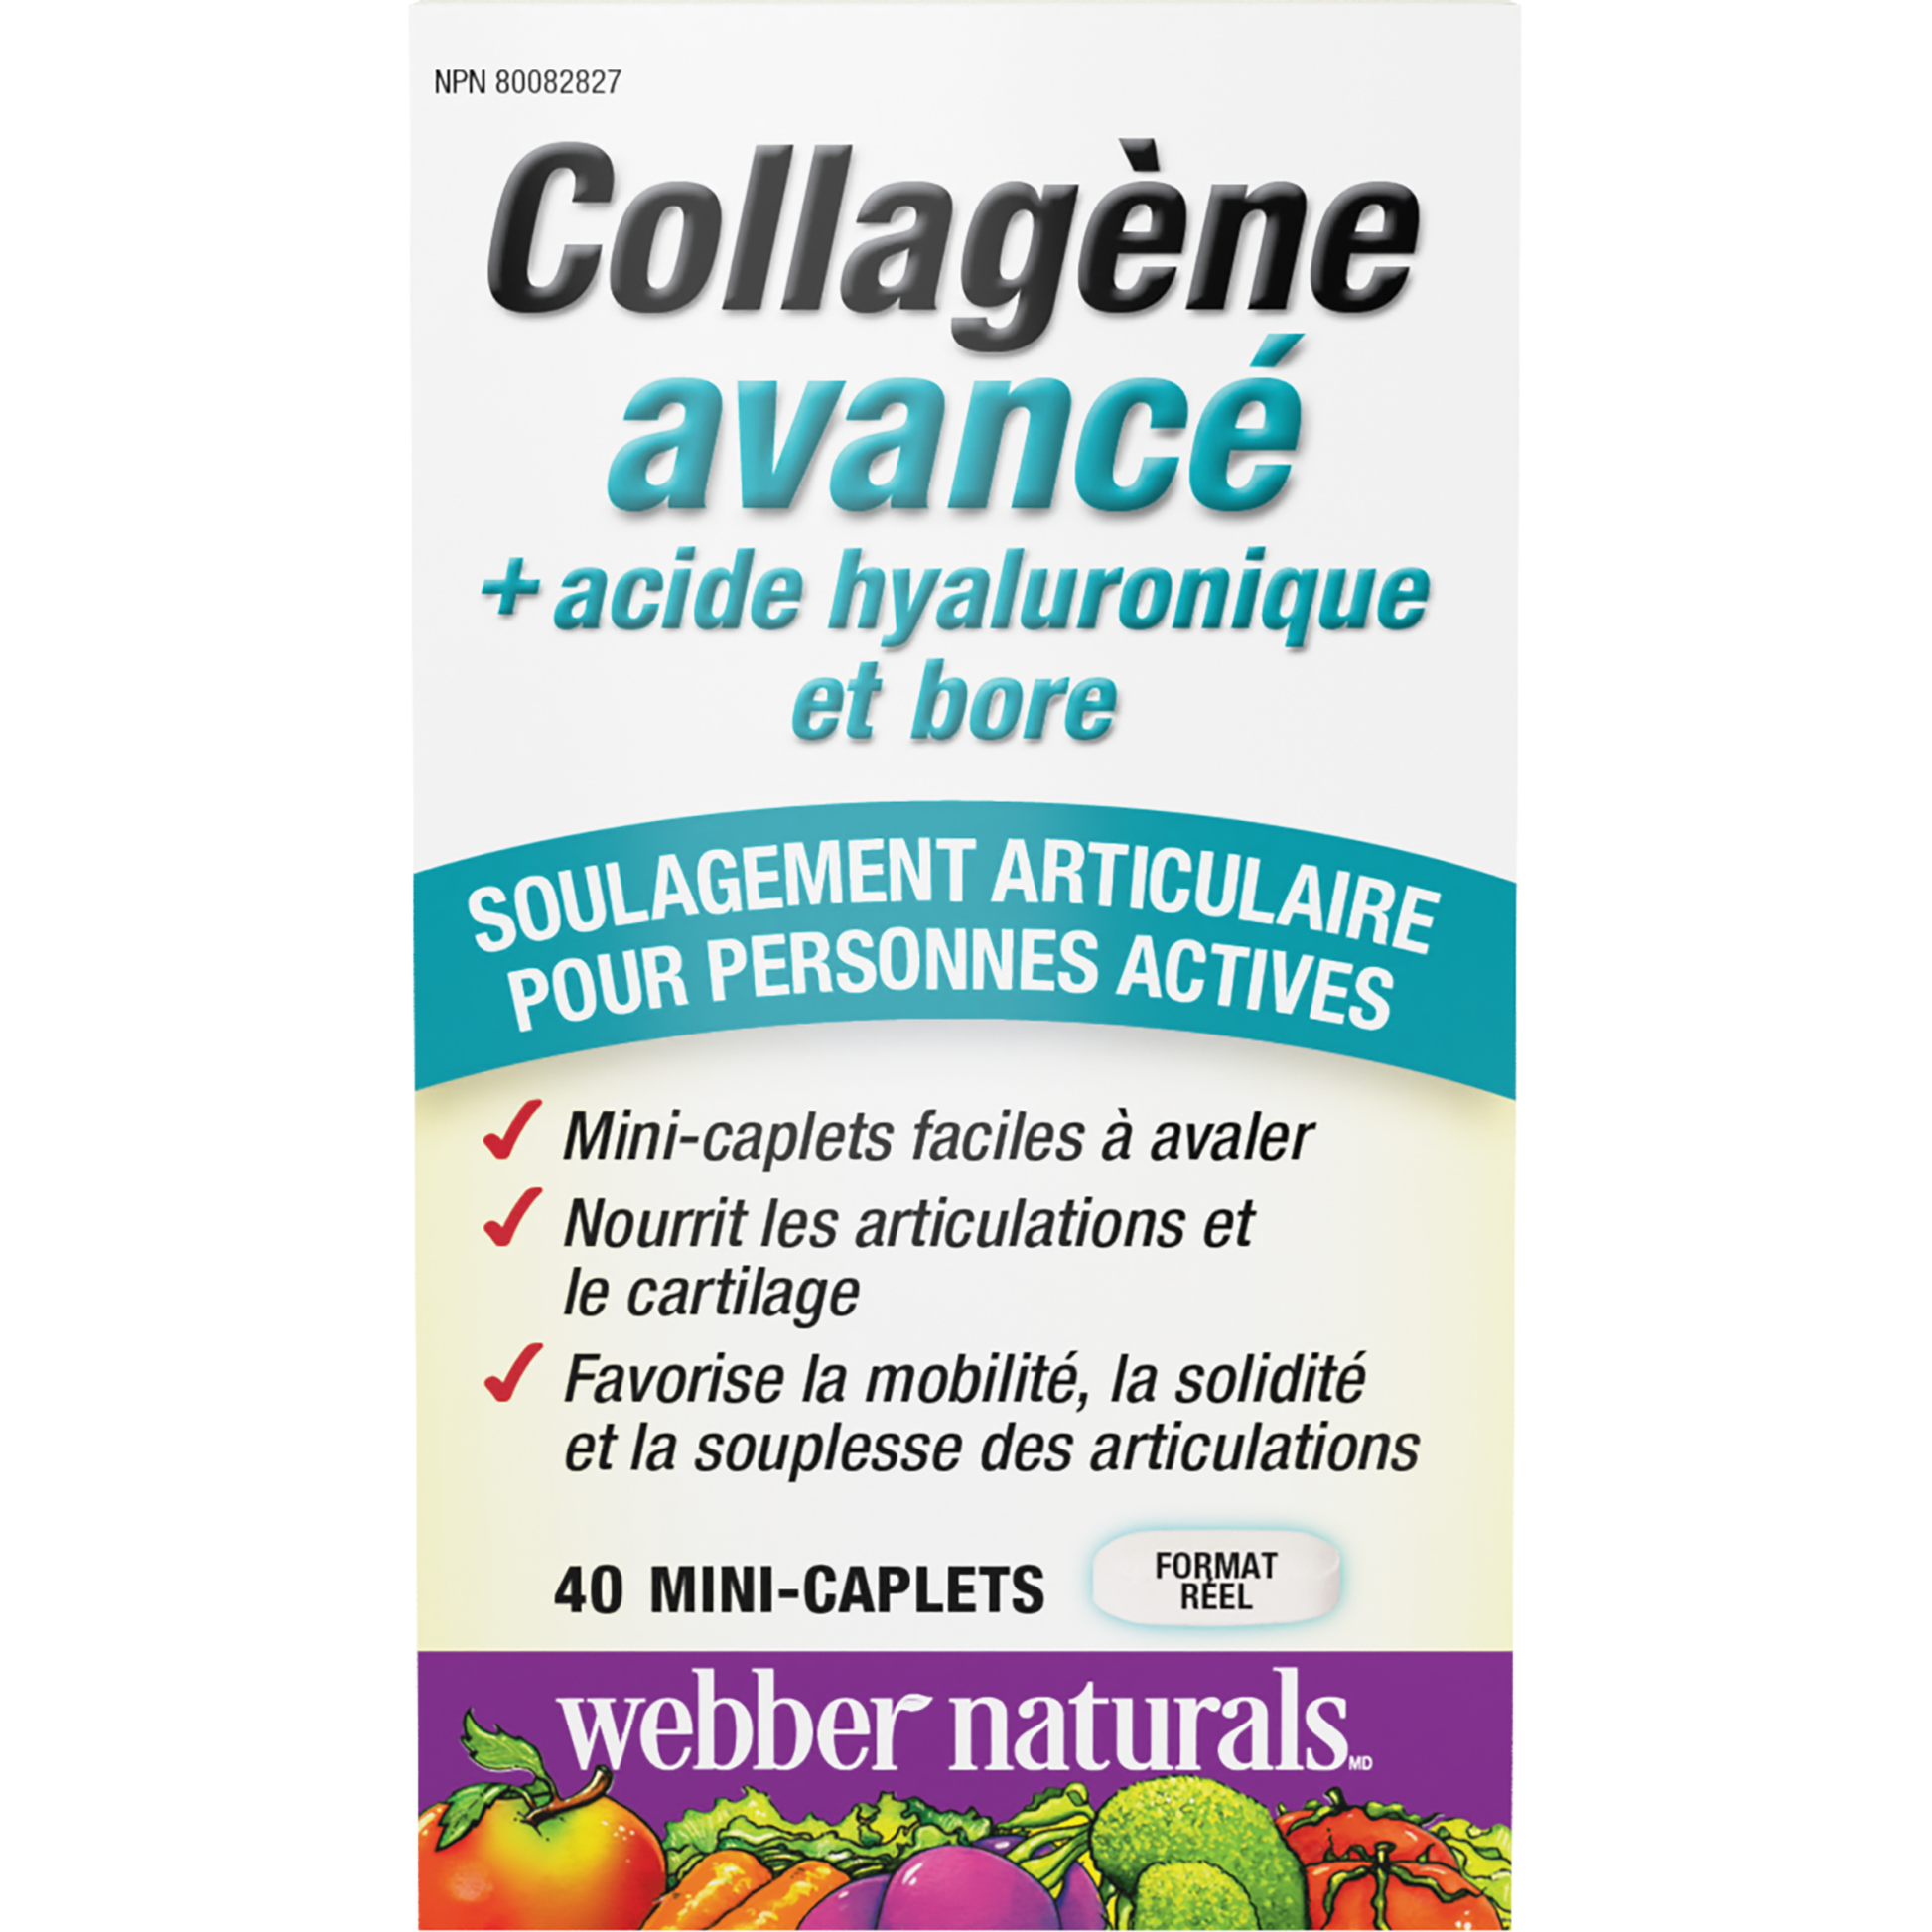 Collagène avancé + acide hyaluronique et bore for Webber Naturals|v|hi-res|WN3661